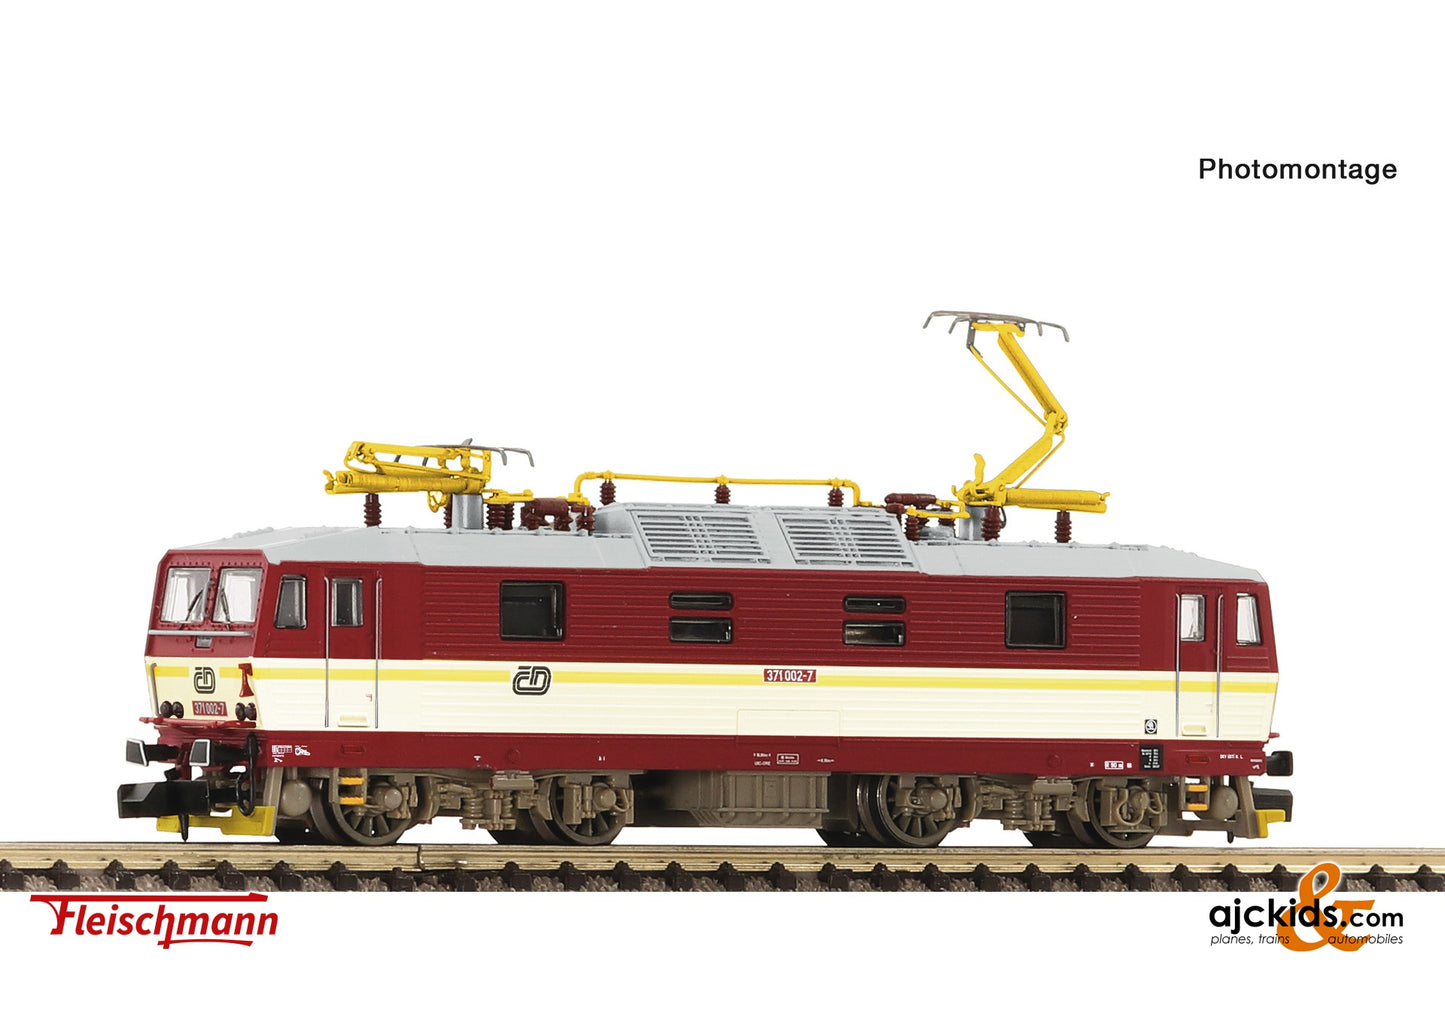 Fleischmann 7560031 - Electric Locomotive 371 0 02-7, CD, EAN: 4005575261937